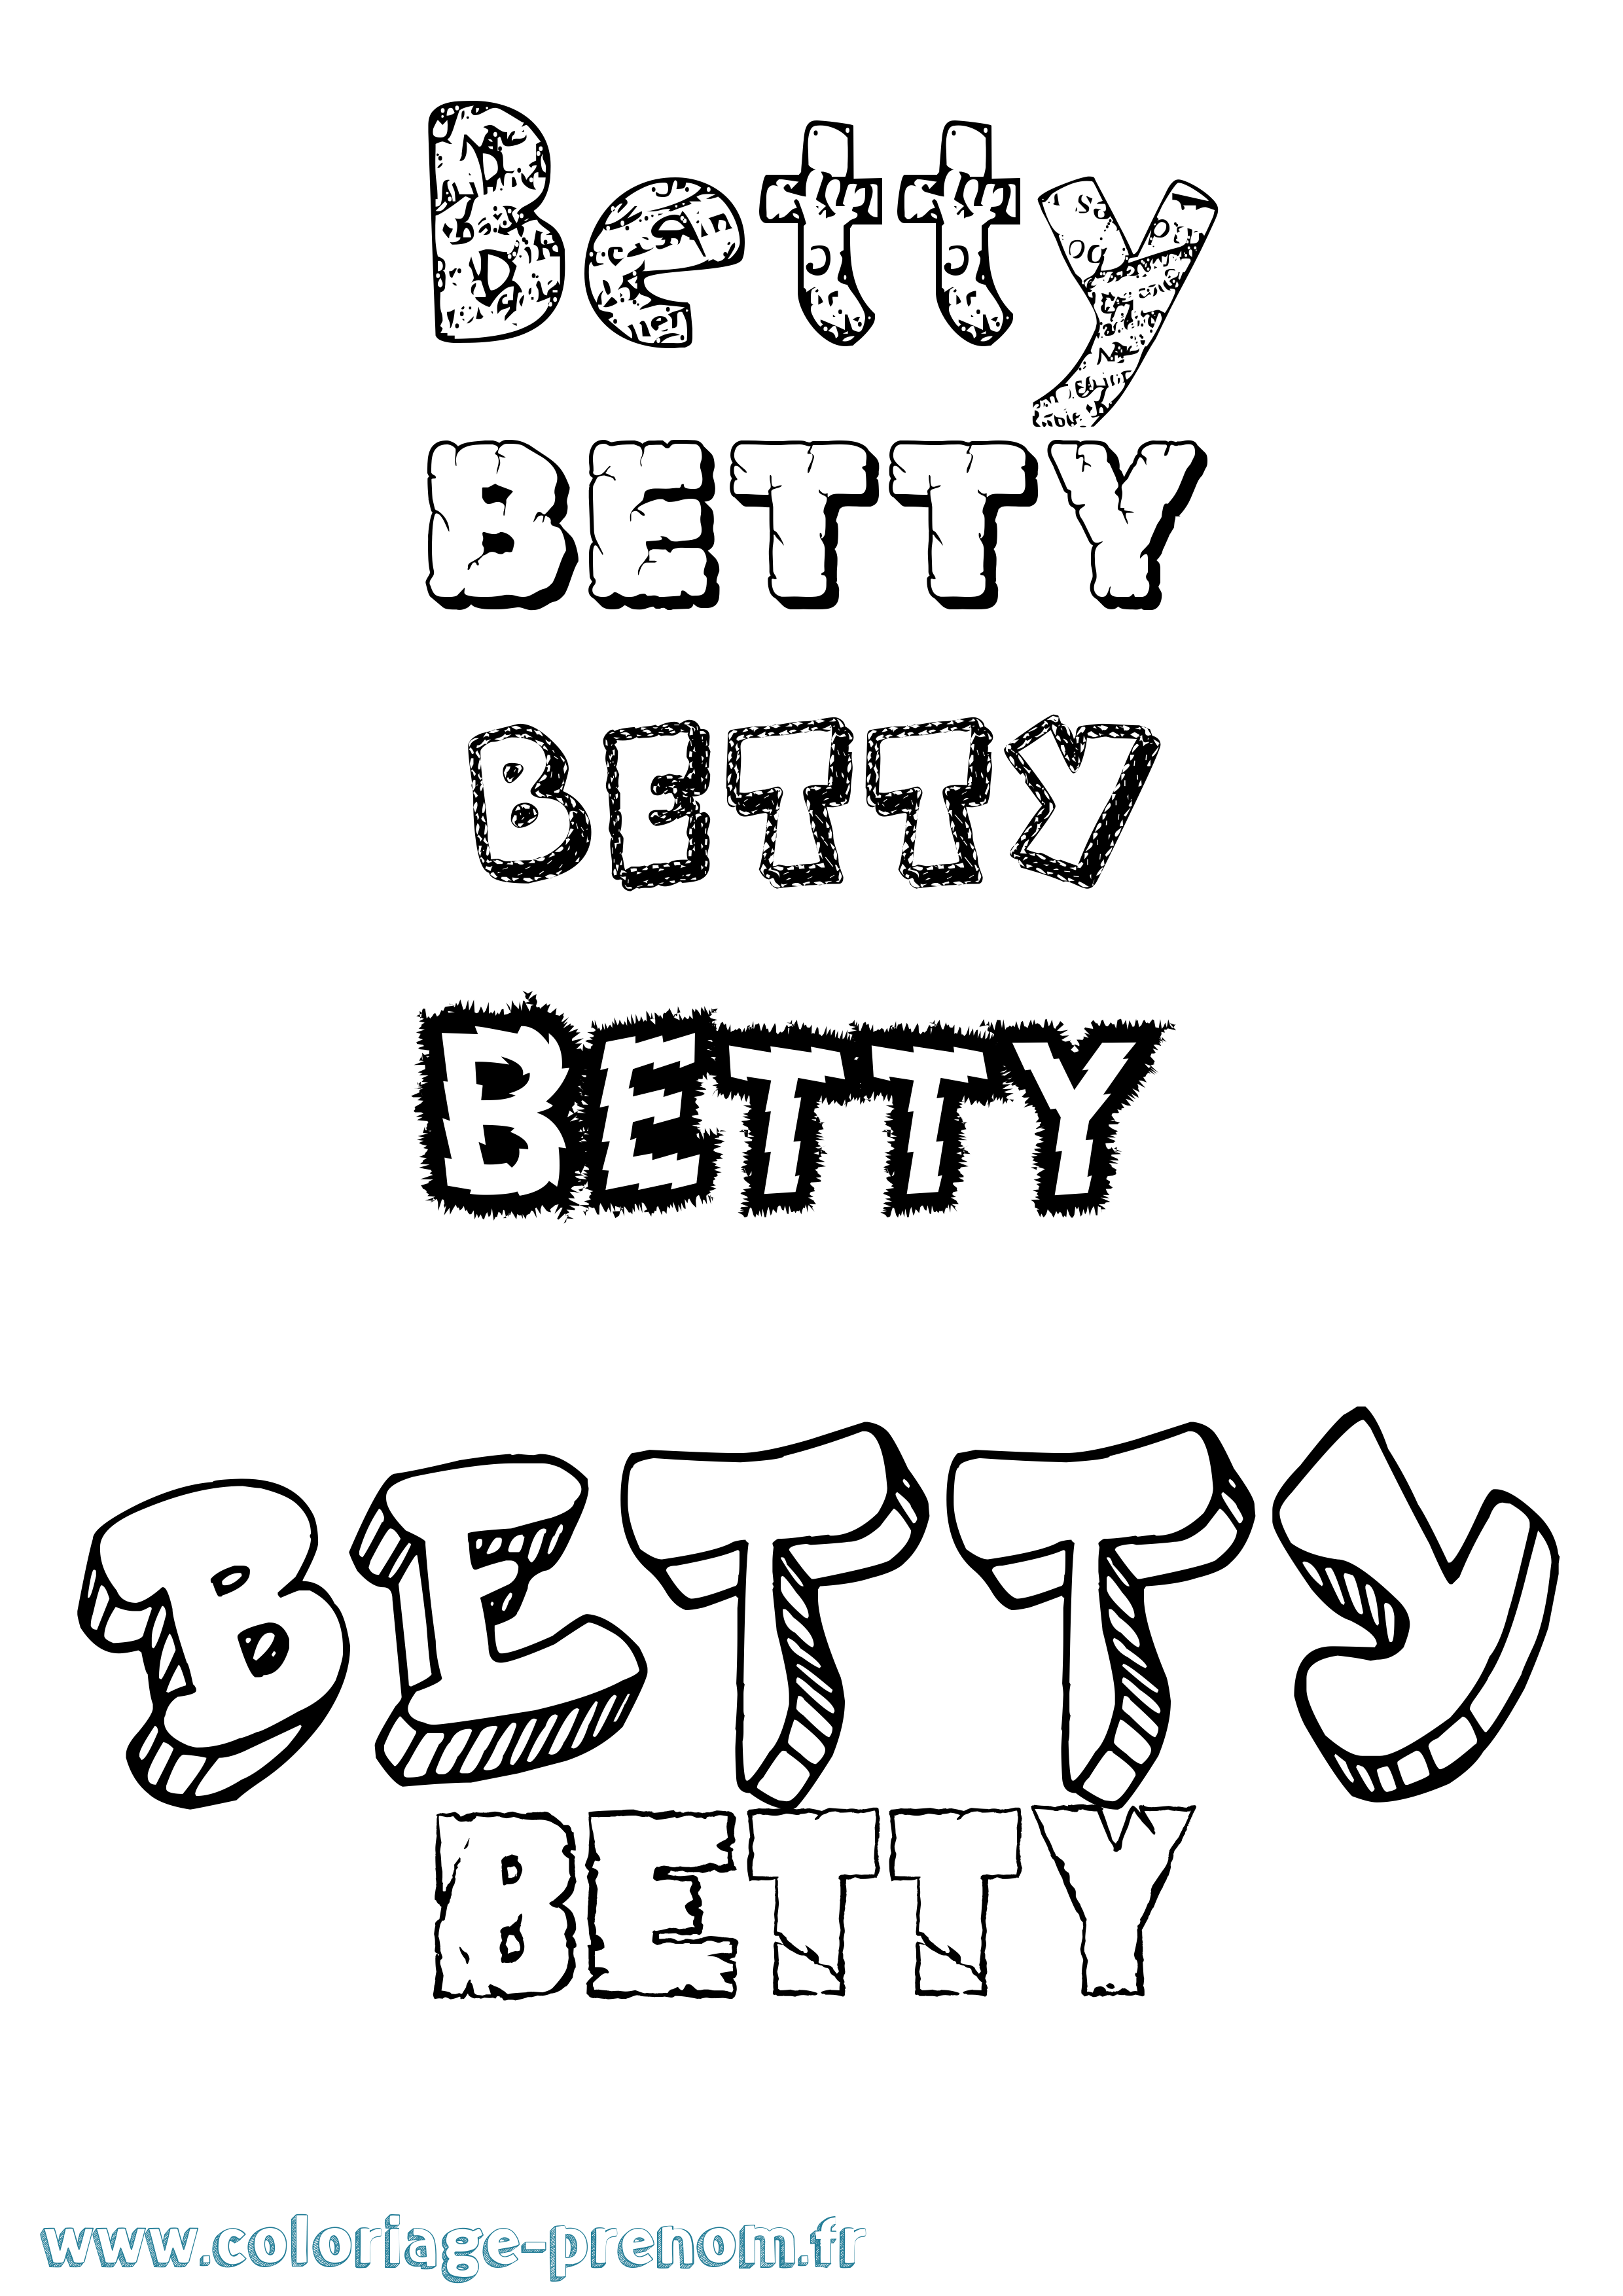 Coloriage prénom Betty